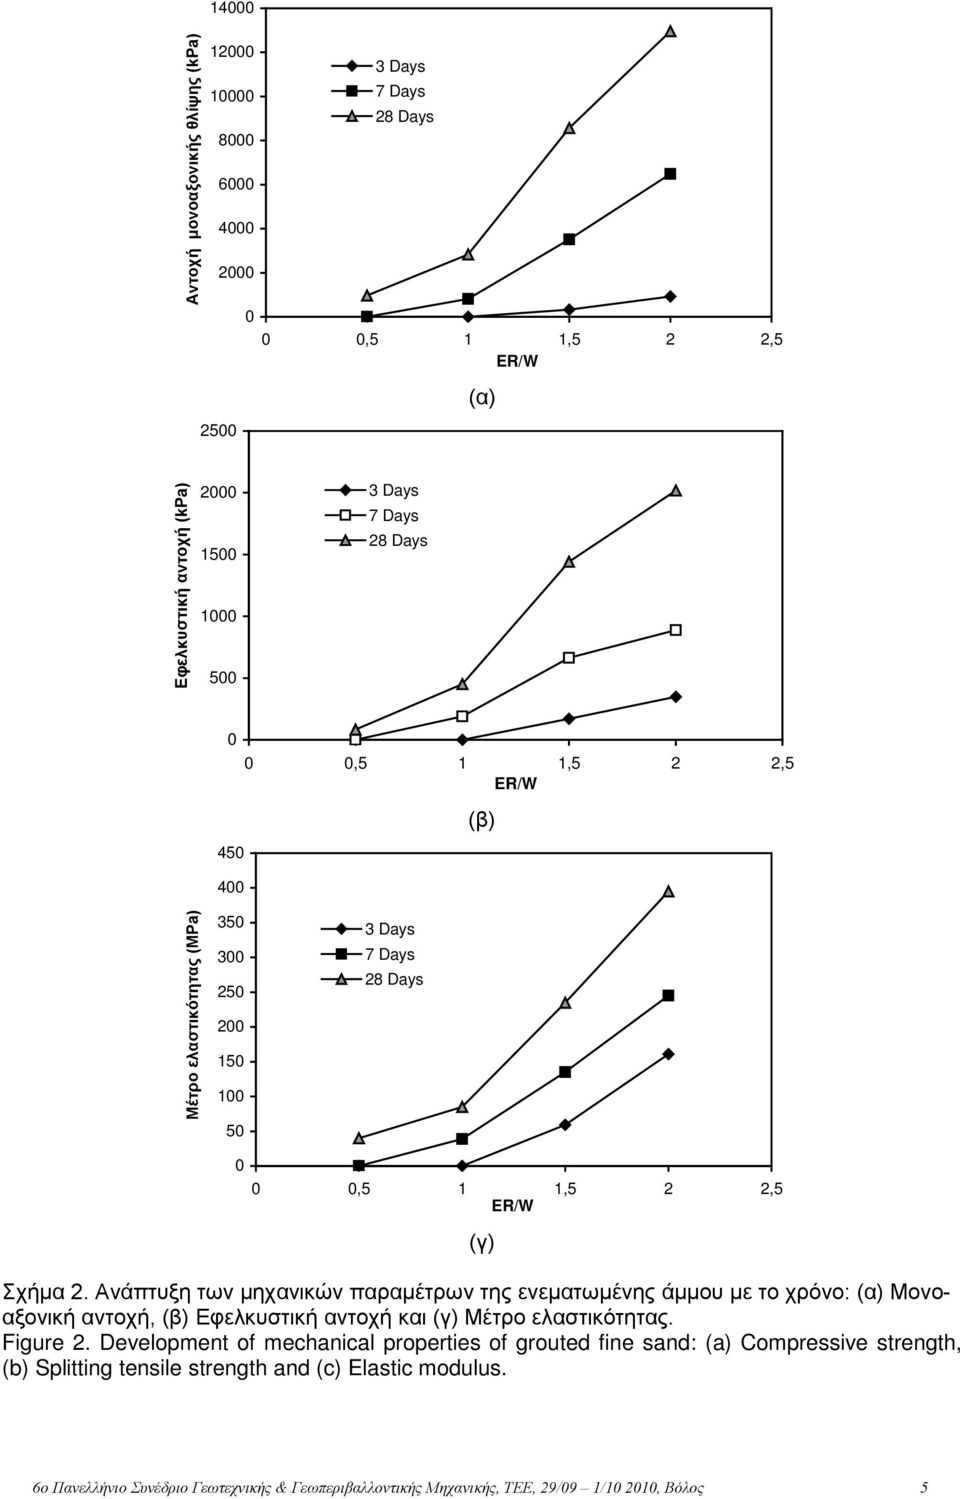 Ανάπτυξη των μηχανικών παραμέτρων της ενεματωμένης άμμου με το χρόνο: (α) Μονοαξονική αντοχή, (β) Εφελκυστική αντοχή και (γ) Μέτρο ελαστικότητας. Figure 2.